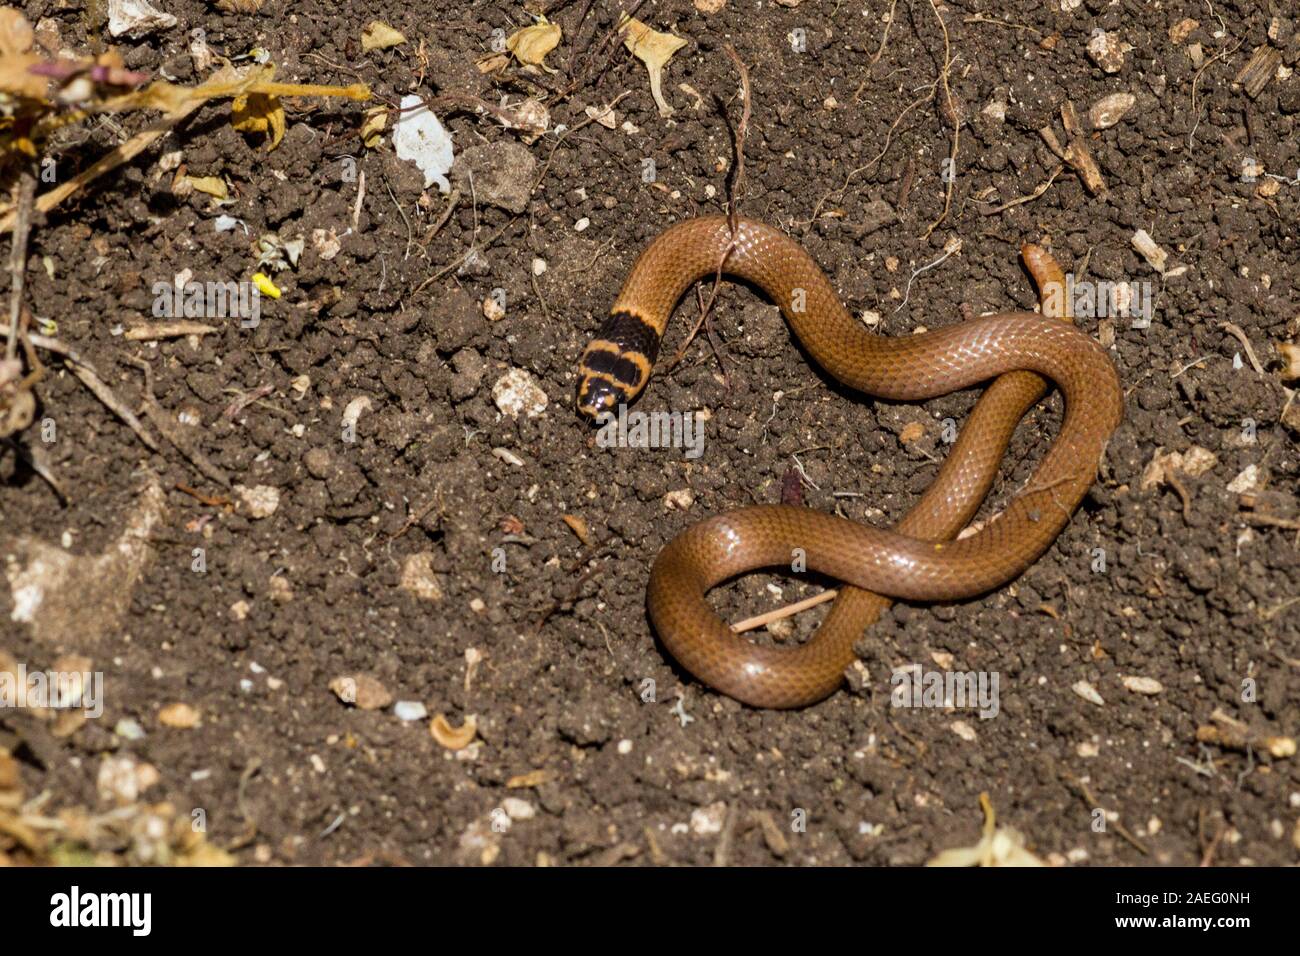 Eirenis rothii est une espèce de serpents de la famille des Colubridae. Il est communément connu sous le nom de nain de Roth racer. Photographié en Israël Banque D'Images